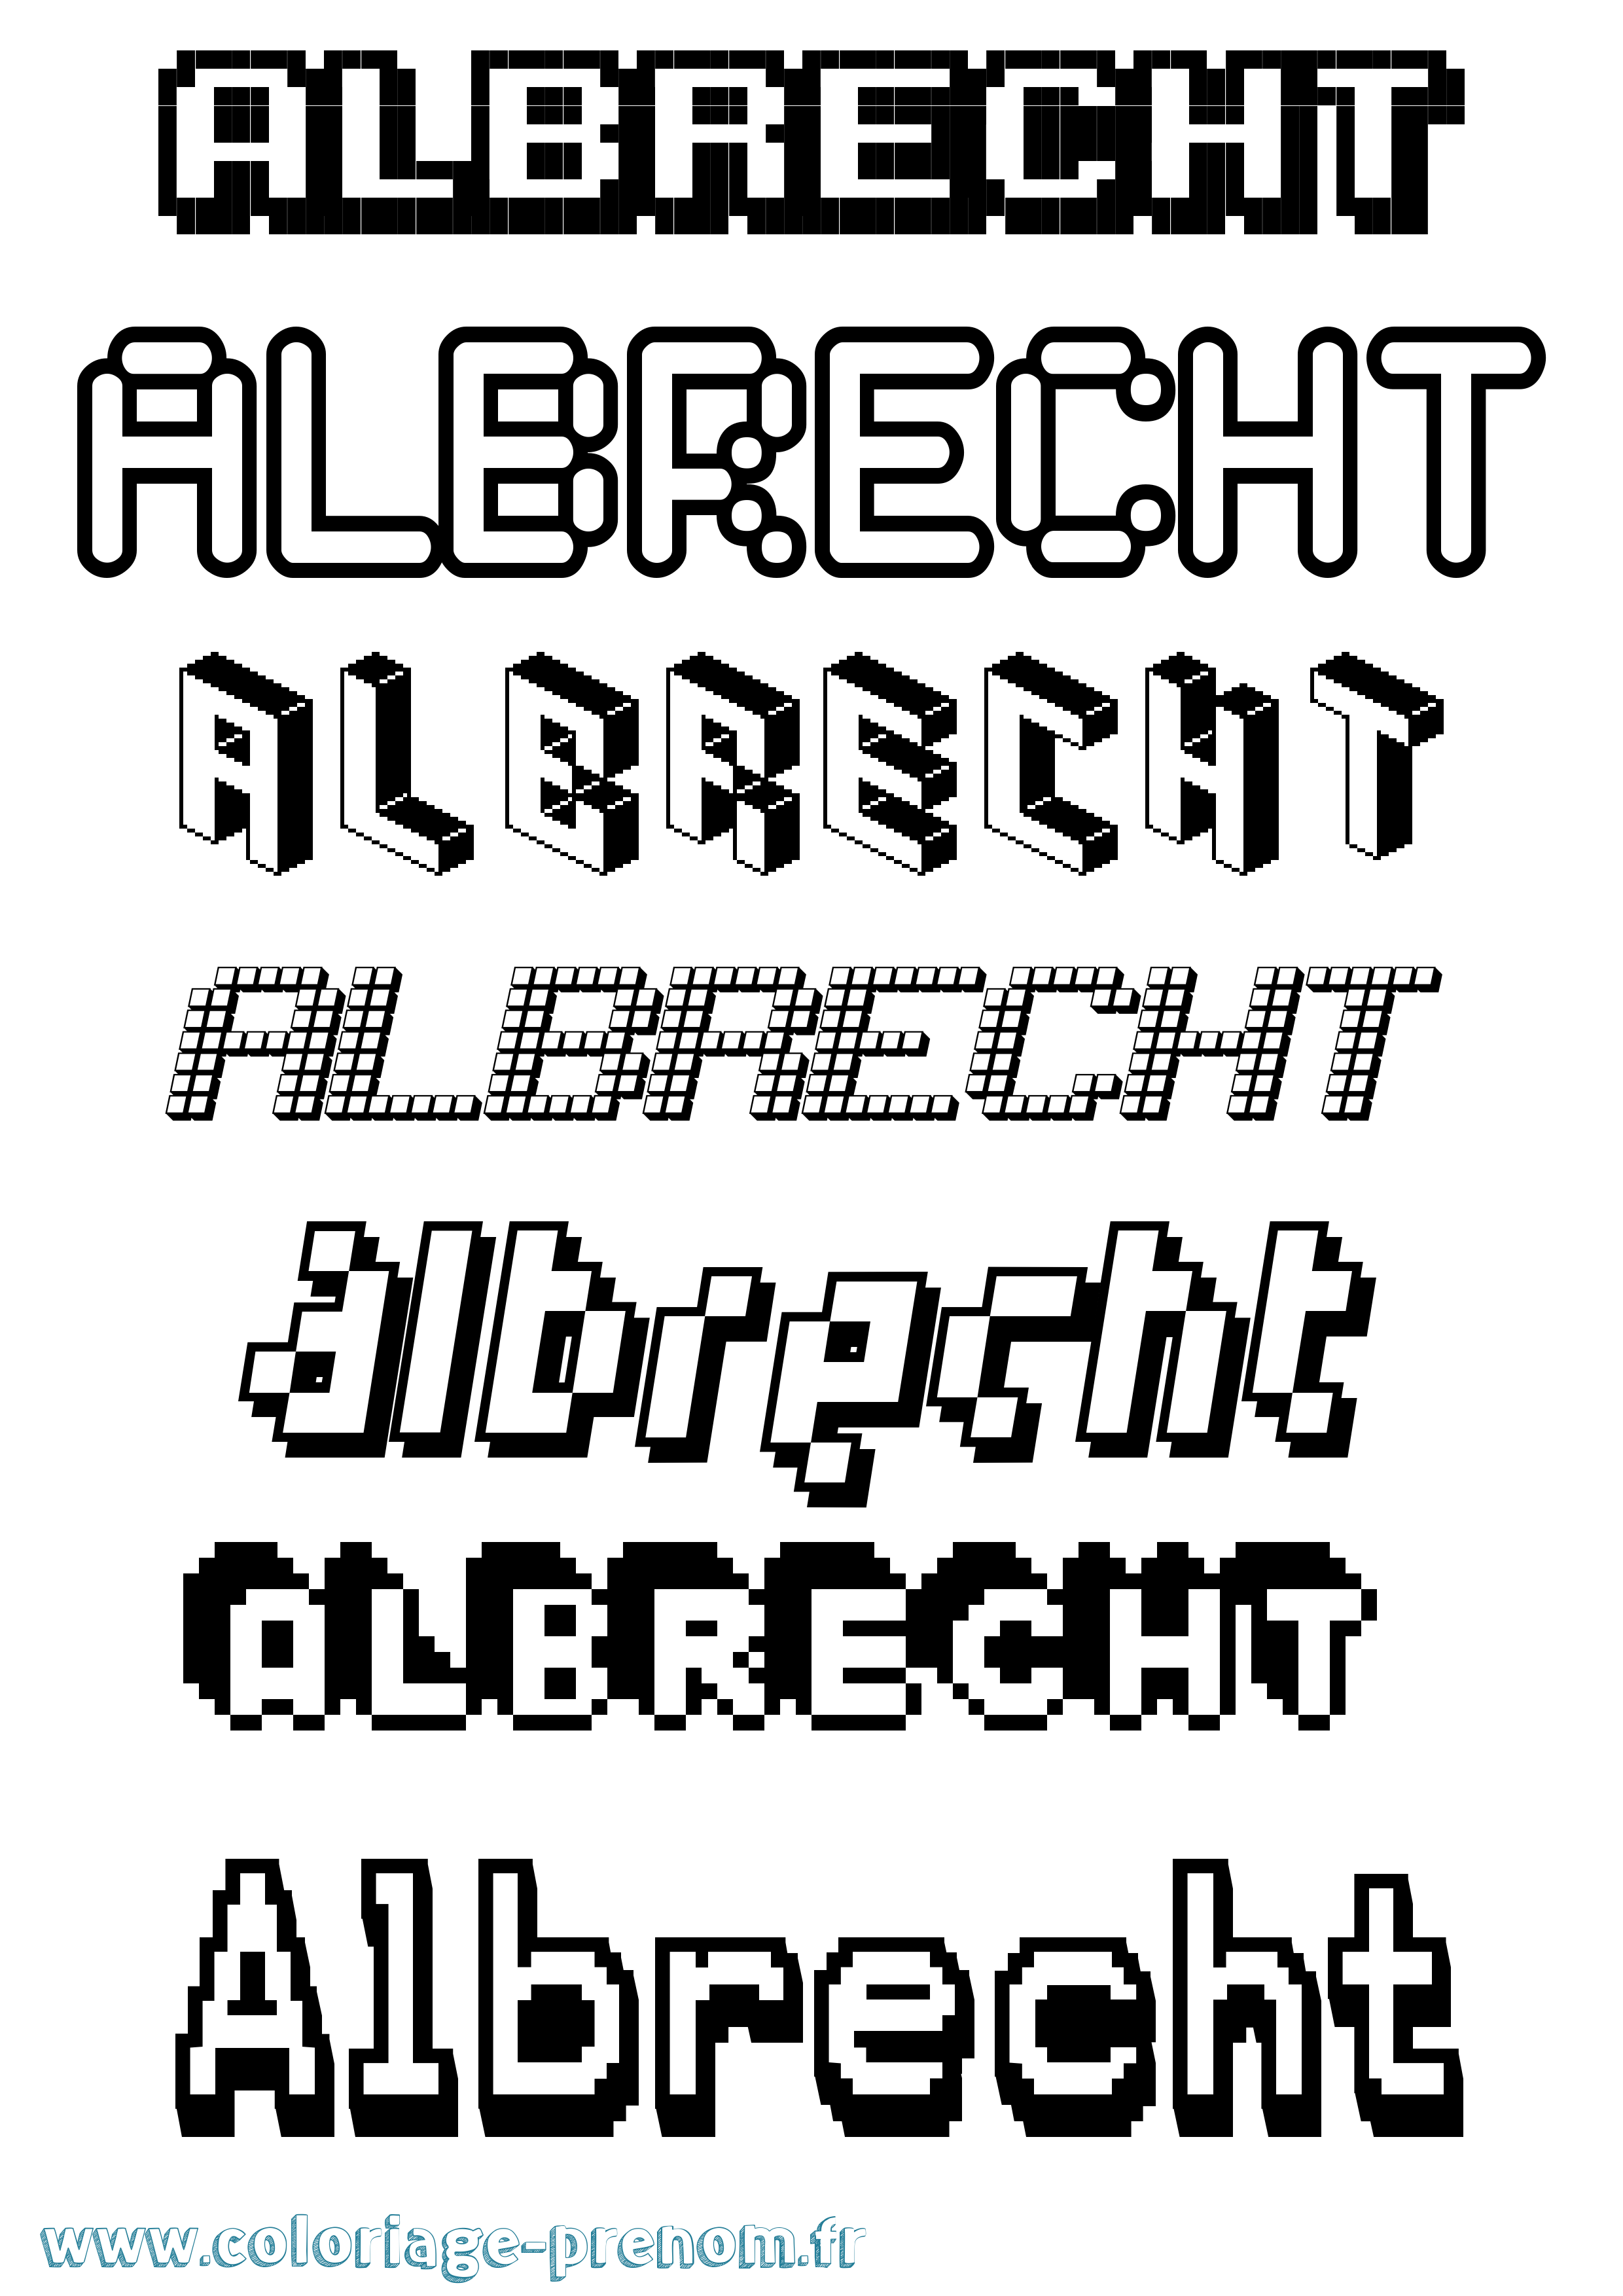 Coloriage prénom Albrecht Pixel